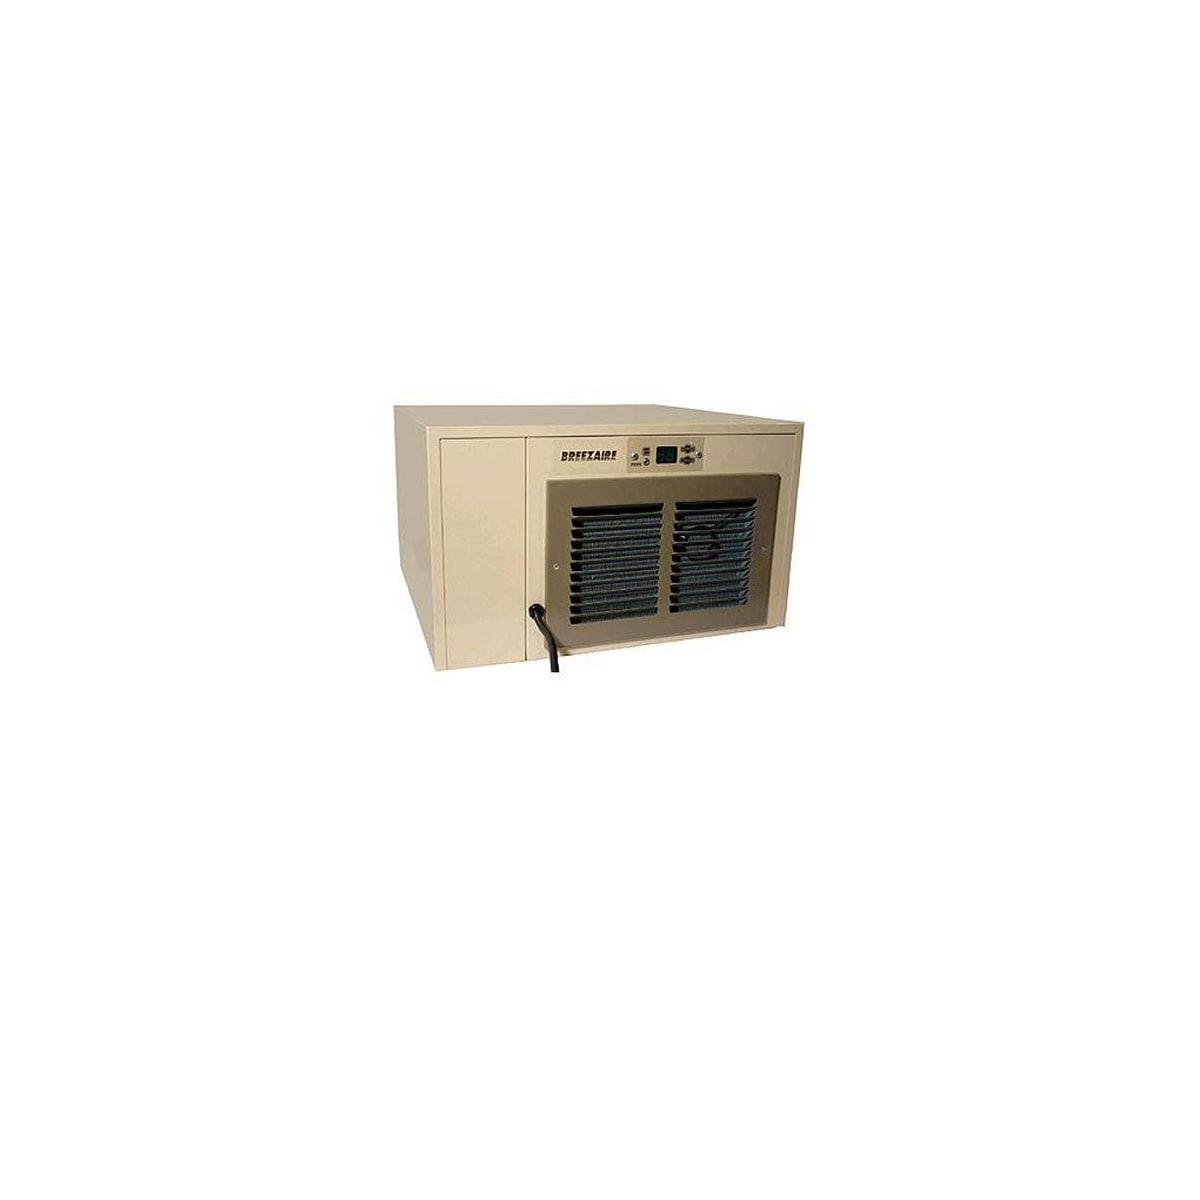 1060 Btu 115v Cabinet Wine Cooling Unit